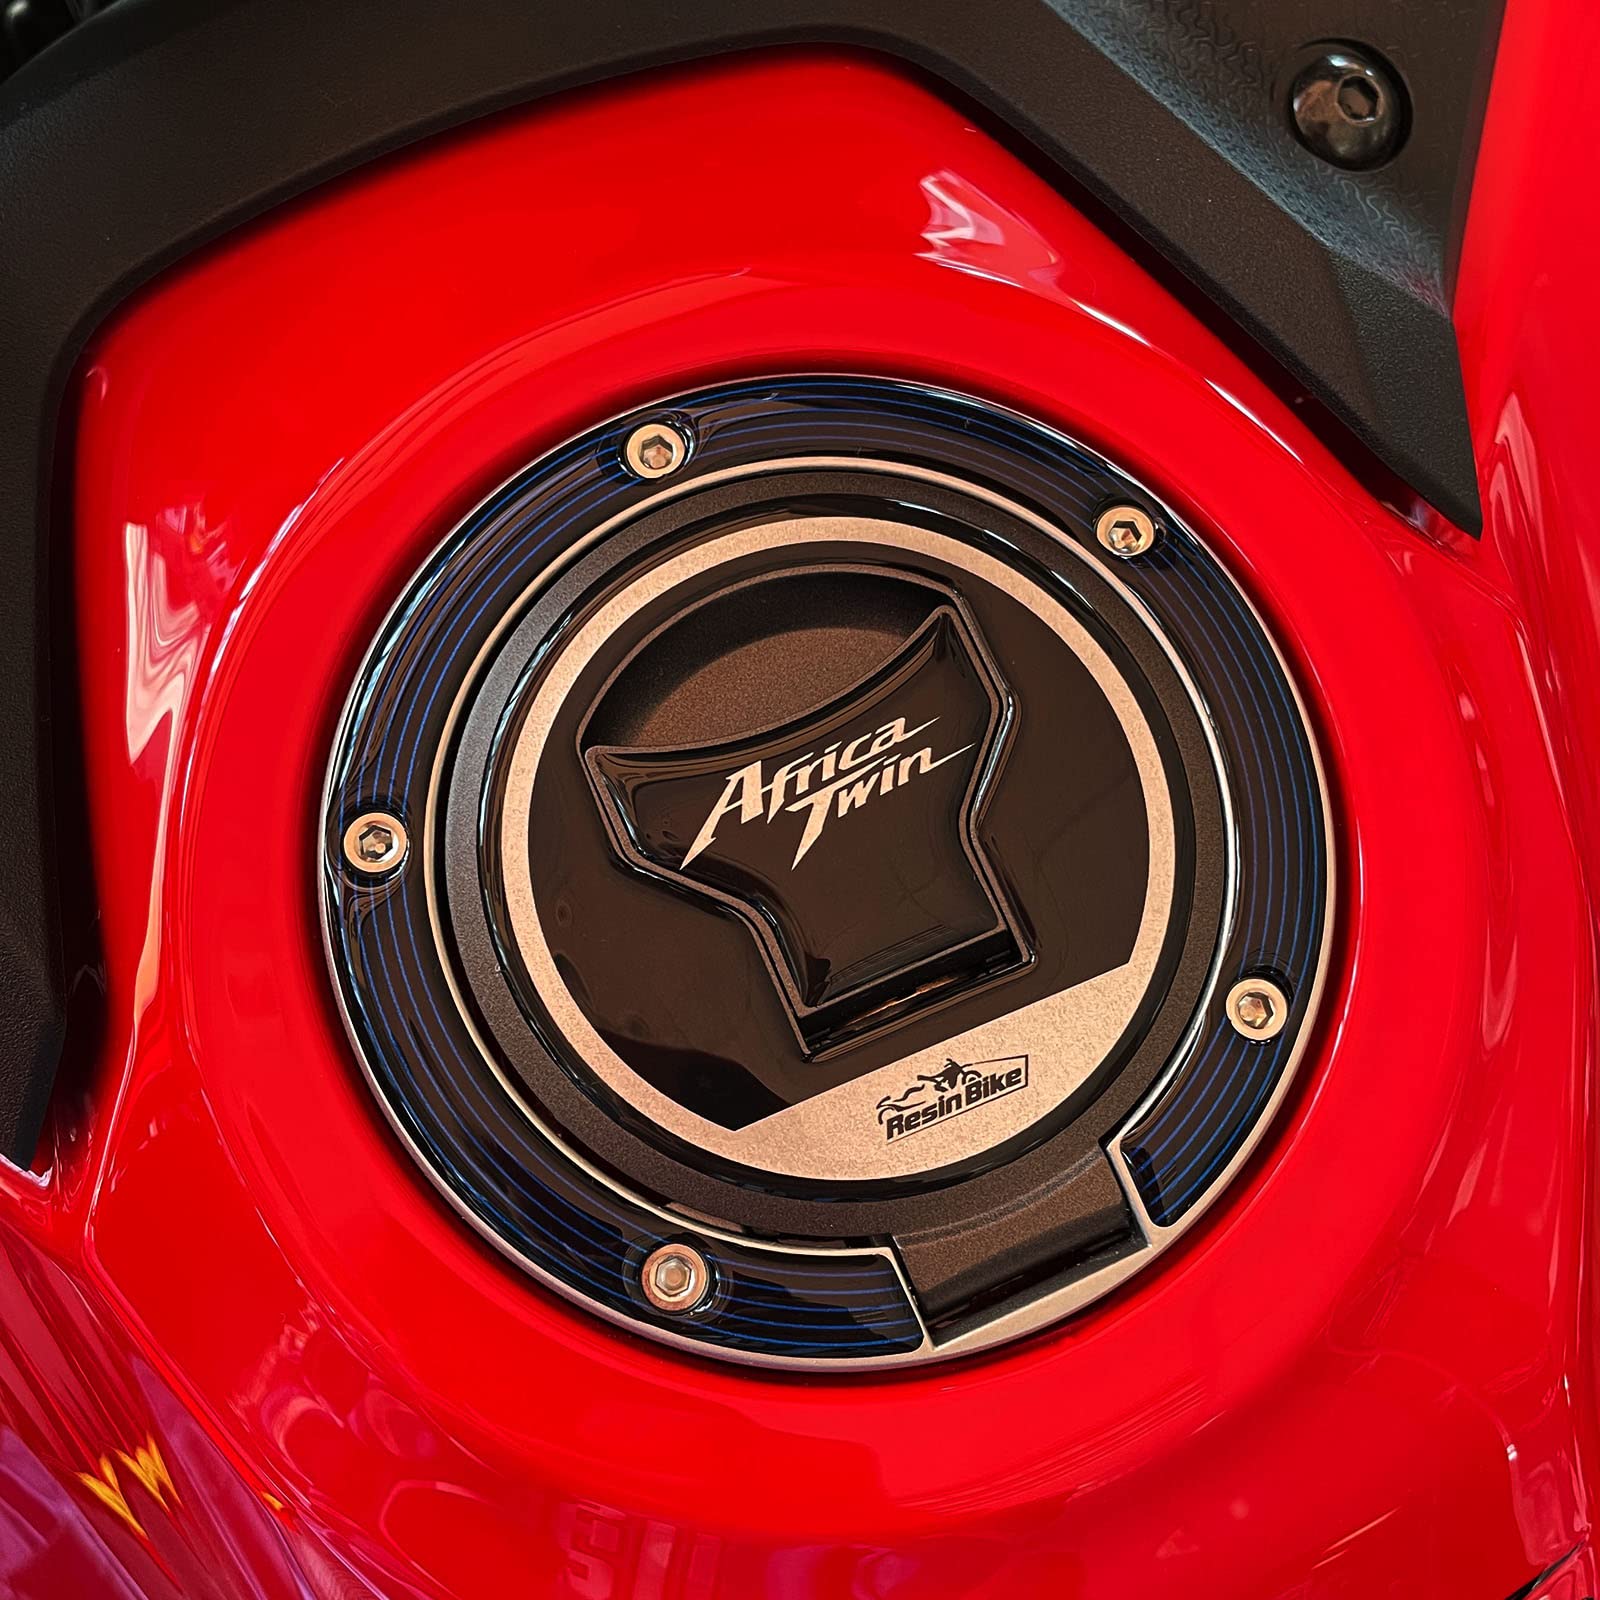 Resin Bike Aufkleber für Motorrad Kompatibel mit Honda Africa Twin CRF 1100 L 2022-2023. Tankdeckelschutz vor Stößen und Kratzern. 3D-Harzklebstoff - Stickers - Made in Italy von Resin Bike